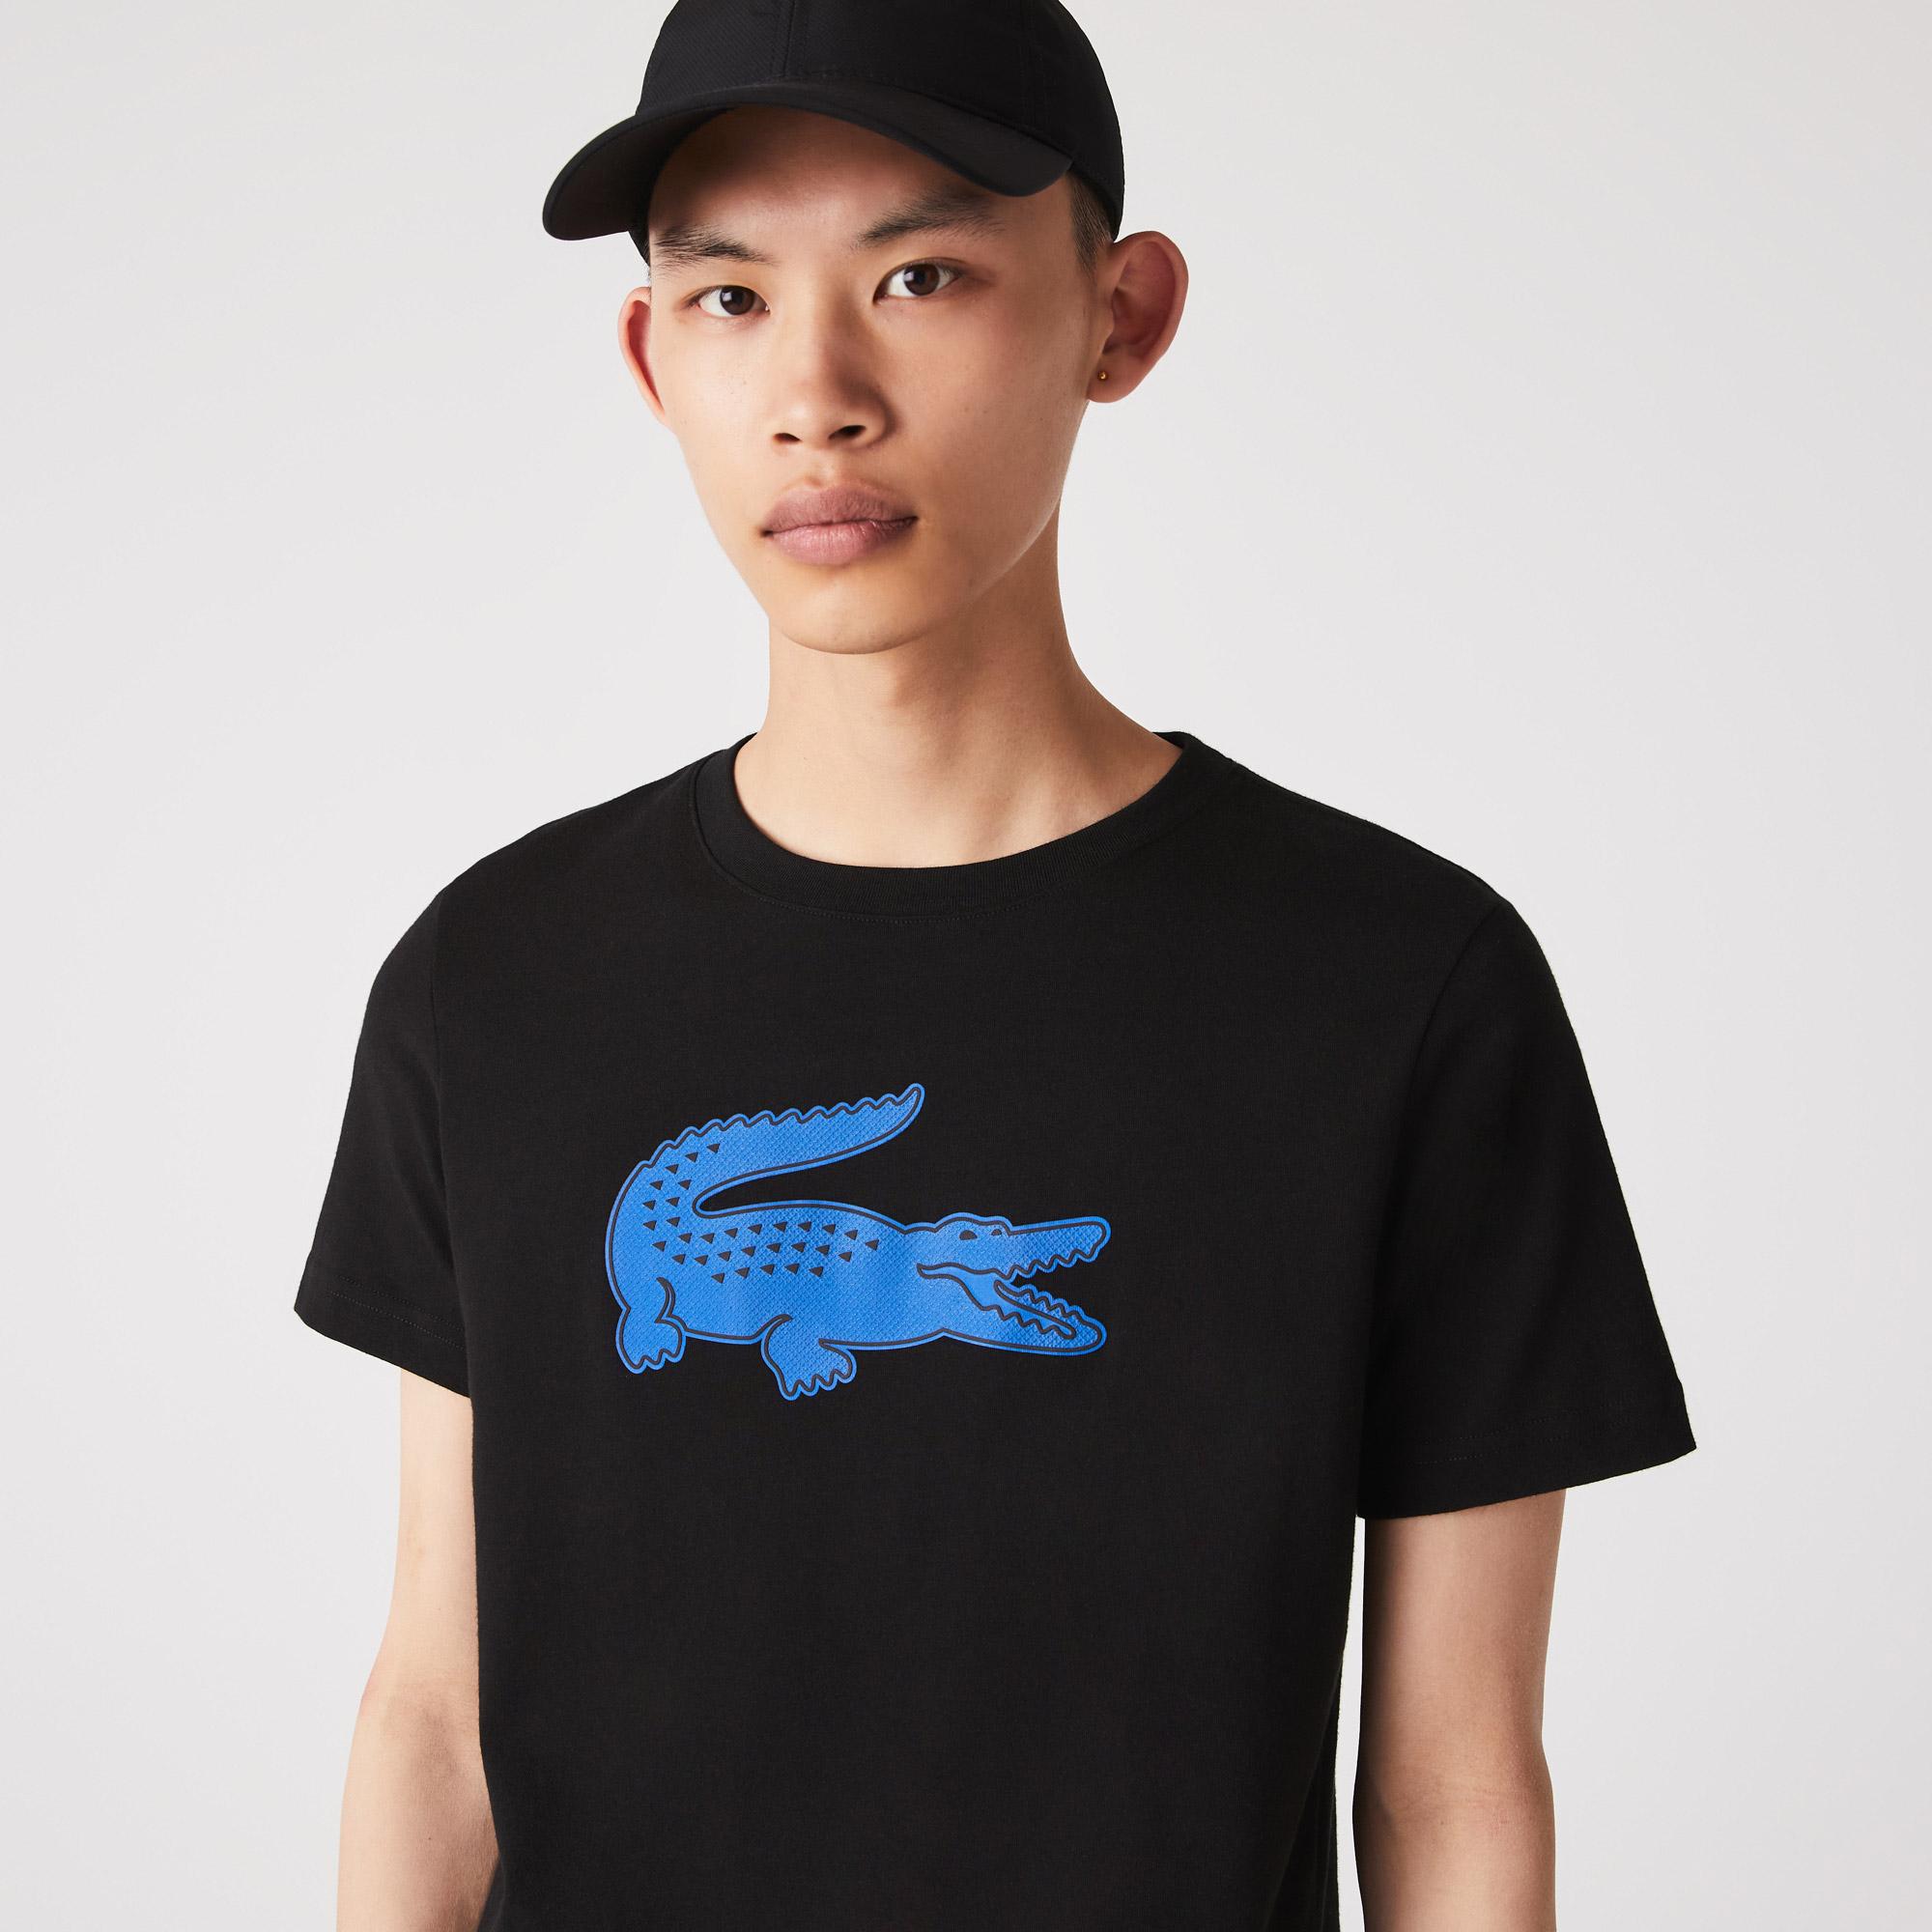 Big Croc T Shirt